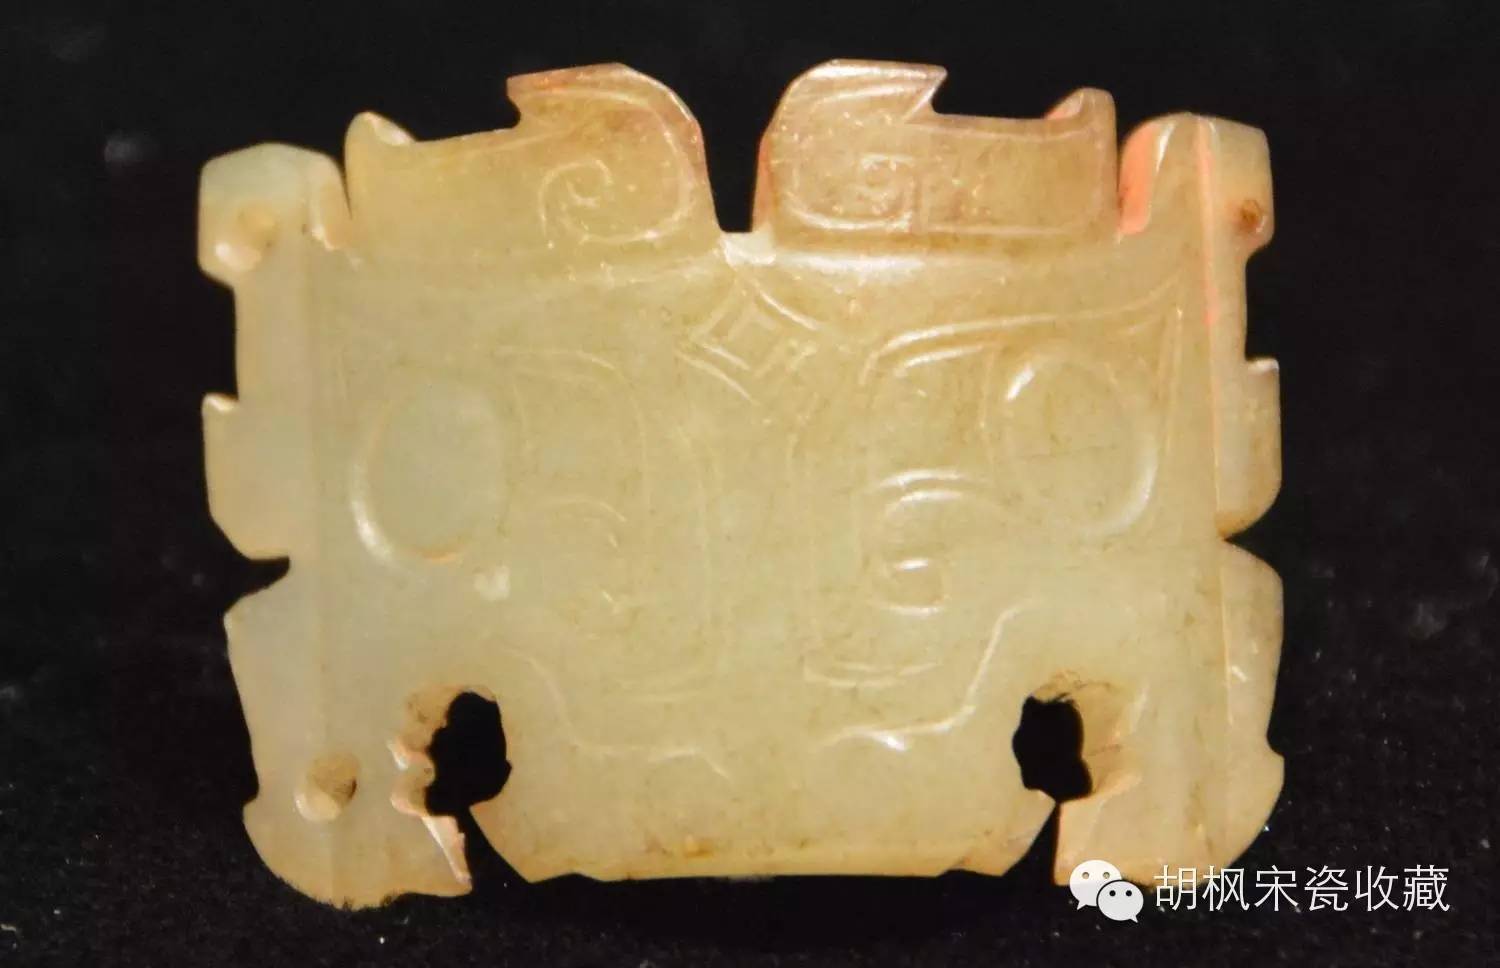 中国社科院考古研究所——发掘出土商周玉器精品